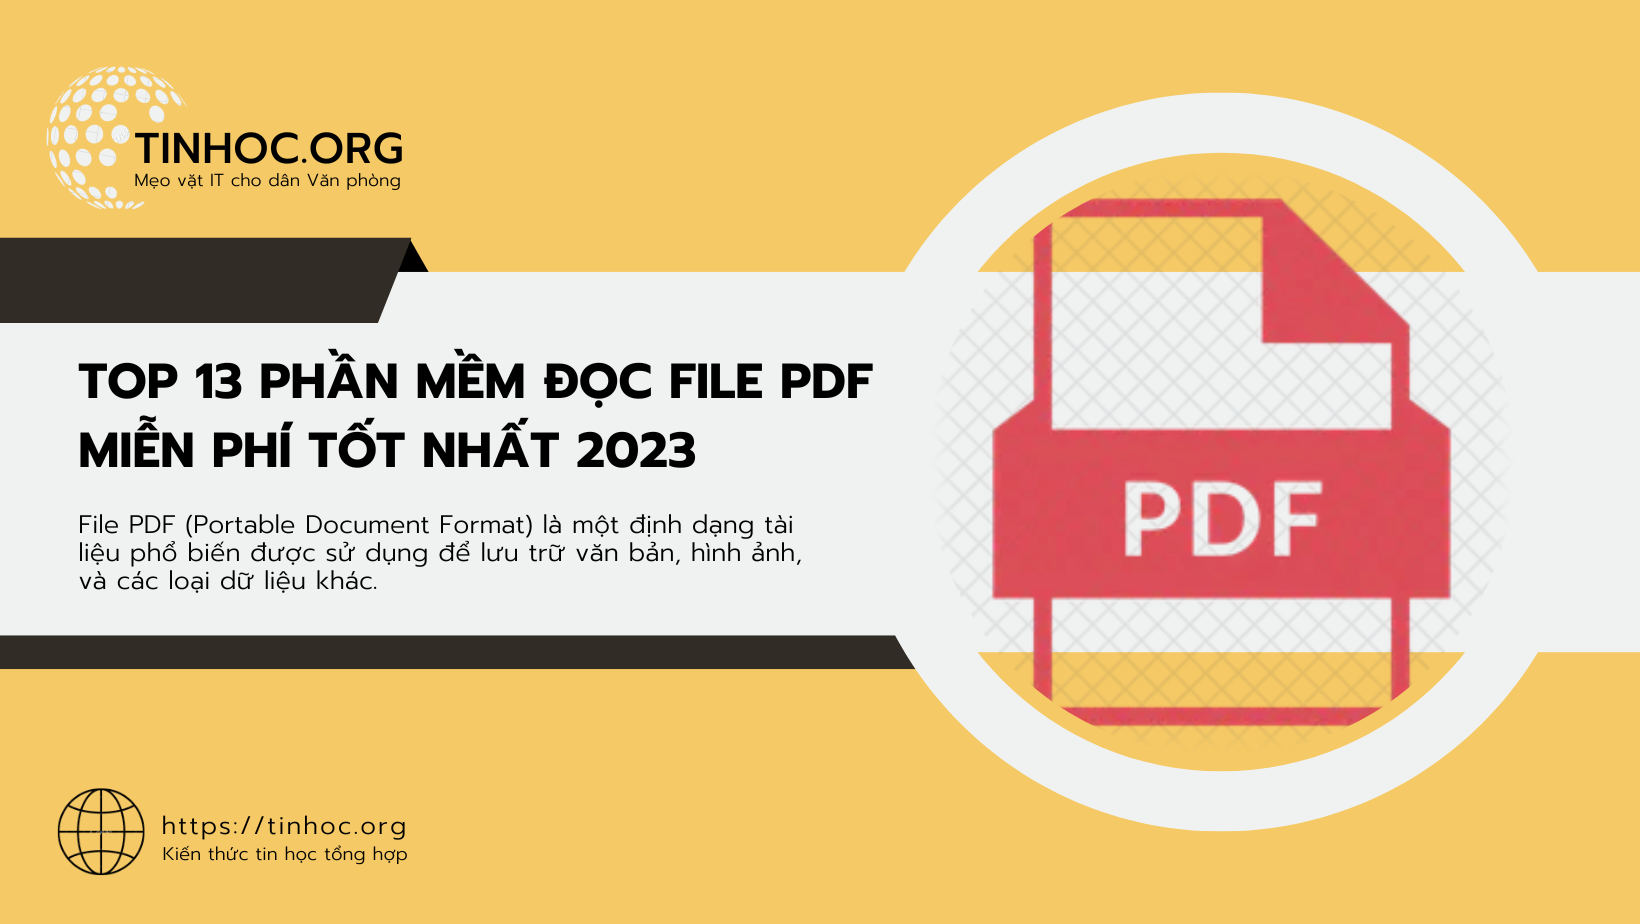 File PDF (Portable Document Format) là một định dạng tài liệu phổ biến được sử dụng để lưu trữ văn bản, hình ảnh, và các loại dữ liệu khác.